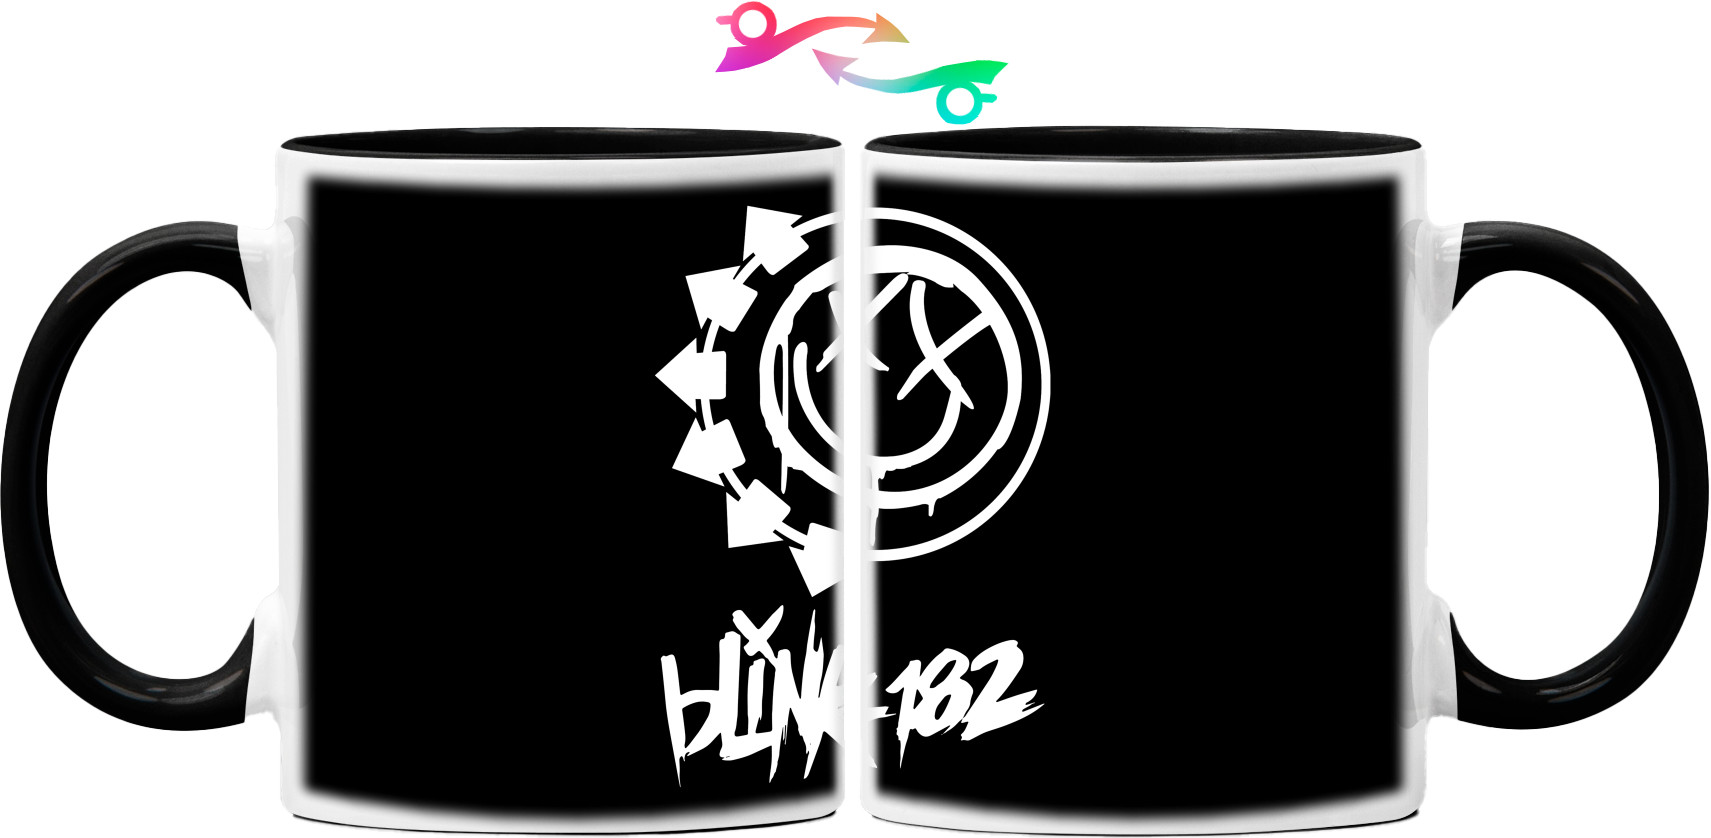 Blink-182 [2]